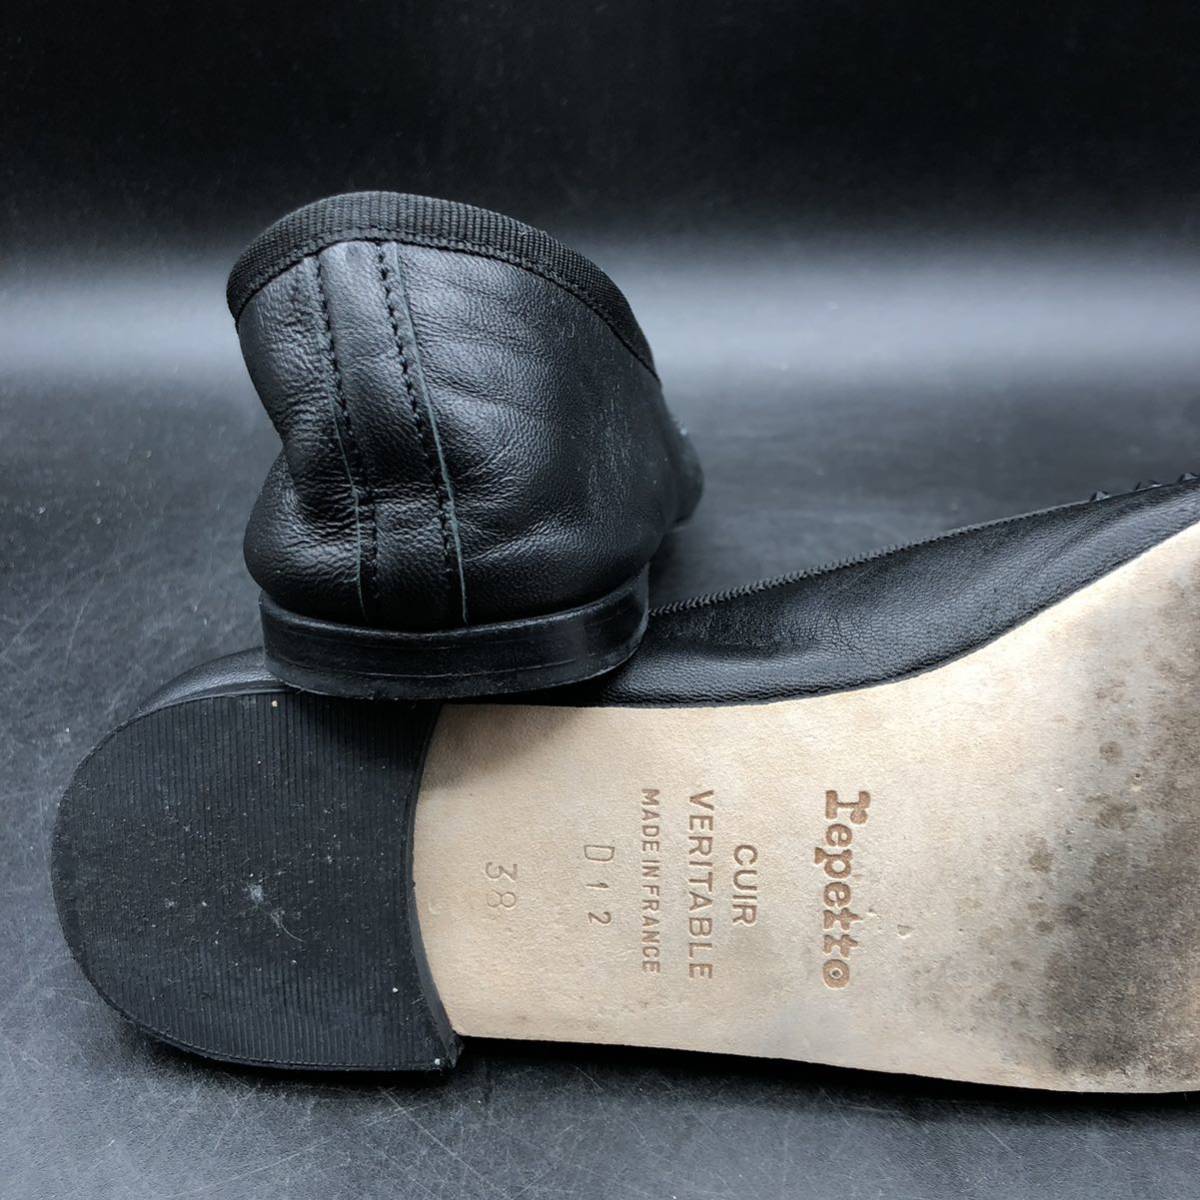 M1757 прекрасный товар repetto Repetto балетки плоская обувь туфли-лодочки 38/24.0cm соответствует черный biju- оборудование орнамент кожа с коробкой Франция производства 